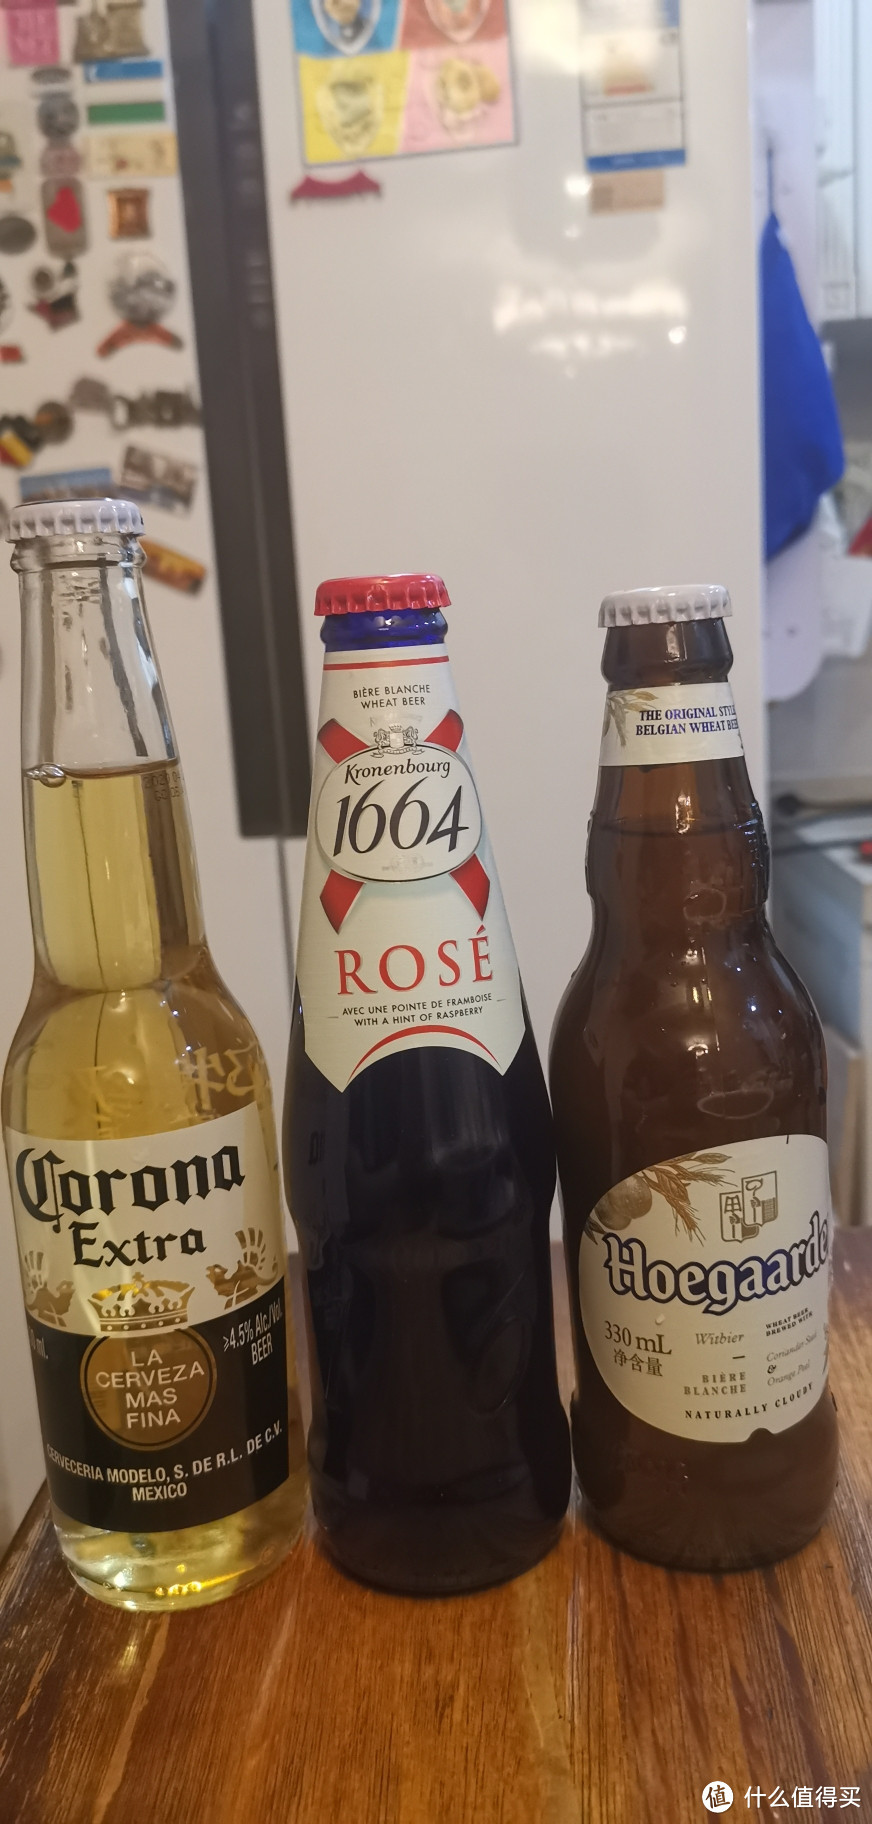 特意买了两种啤酒对比